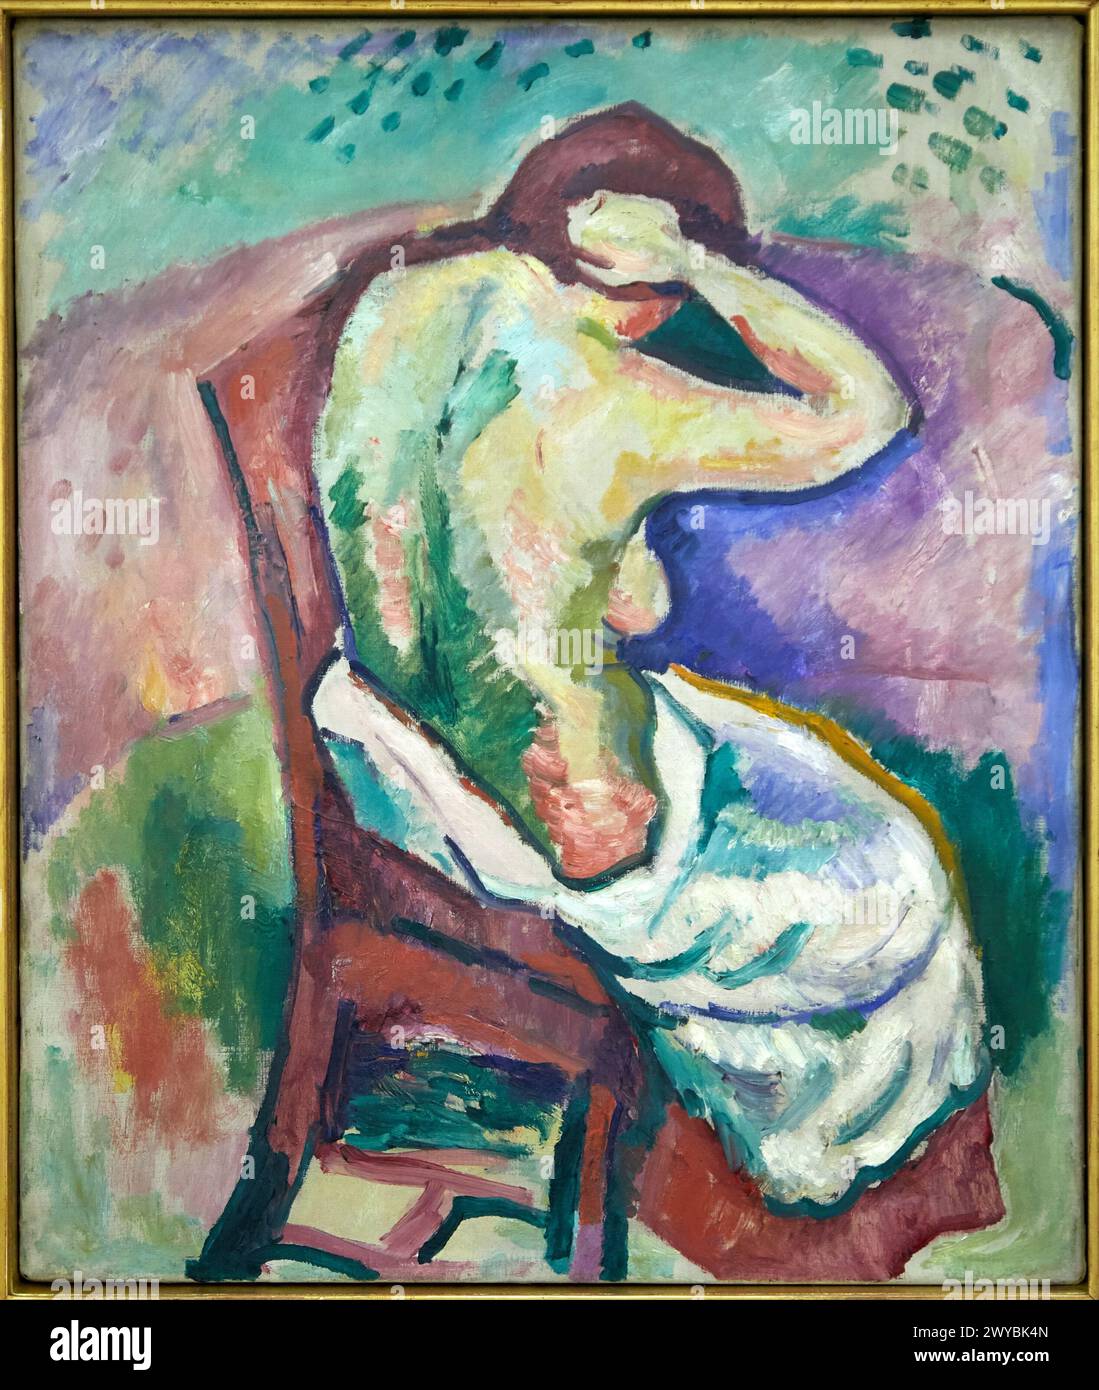 'Femme nue assise' 1907, Georges Braque, Centre Pompidou, Paris, France, Europe. Stock Photo